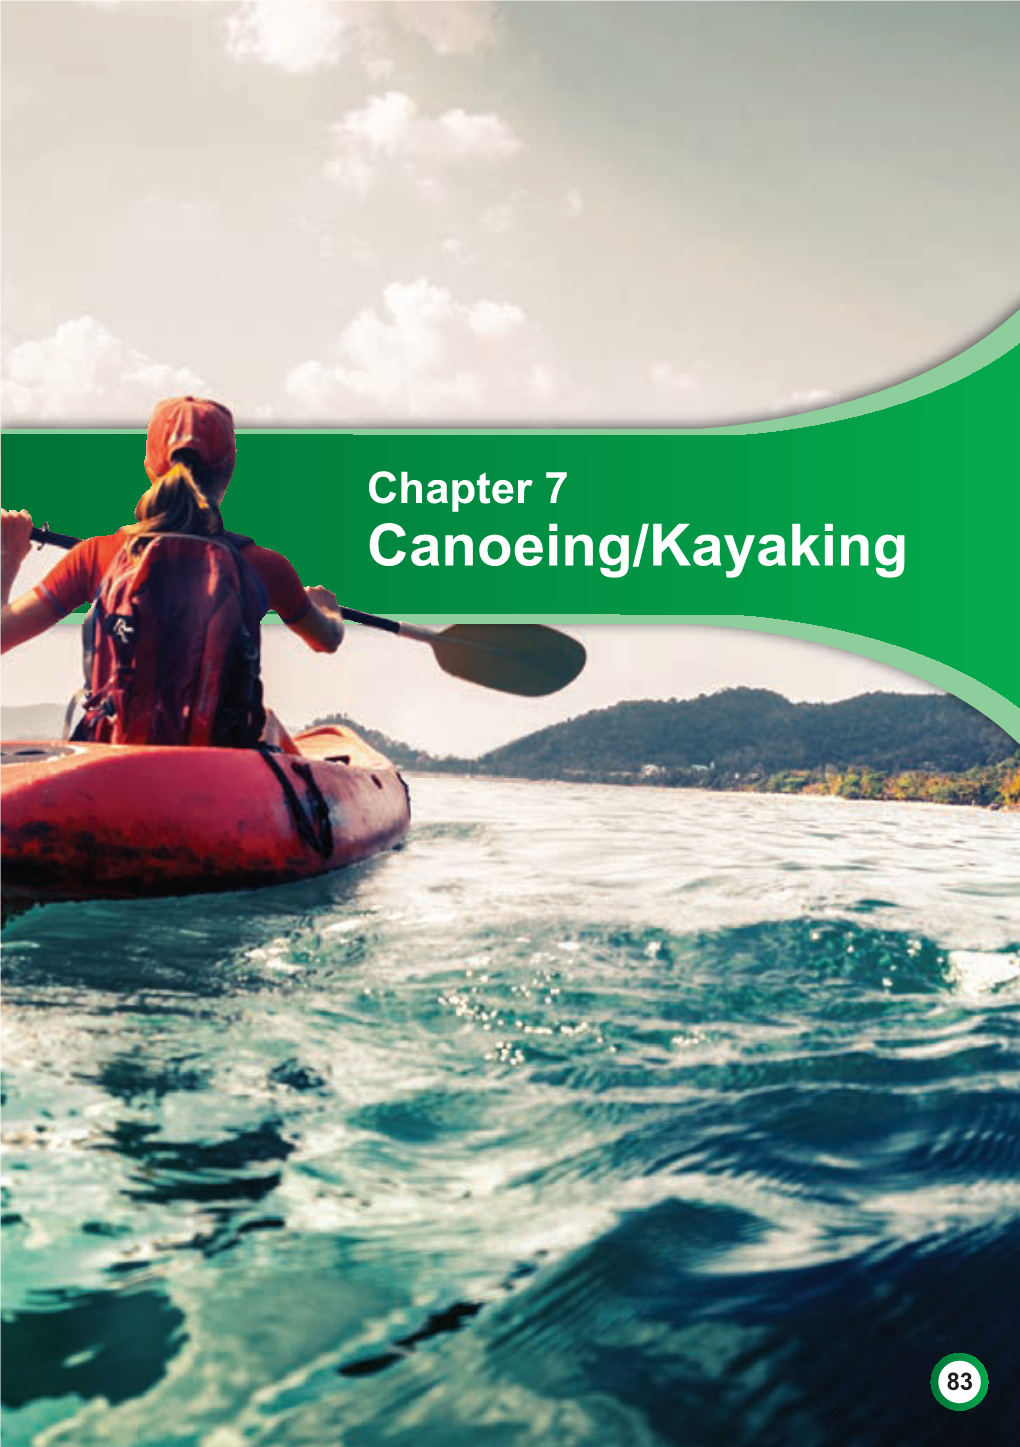 Chapter 7 Canoeing/Kayaking